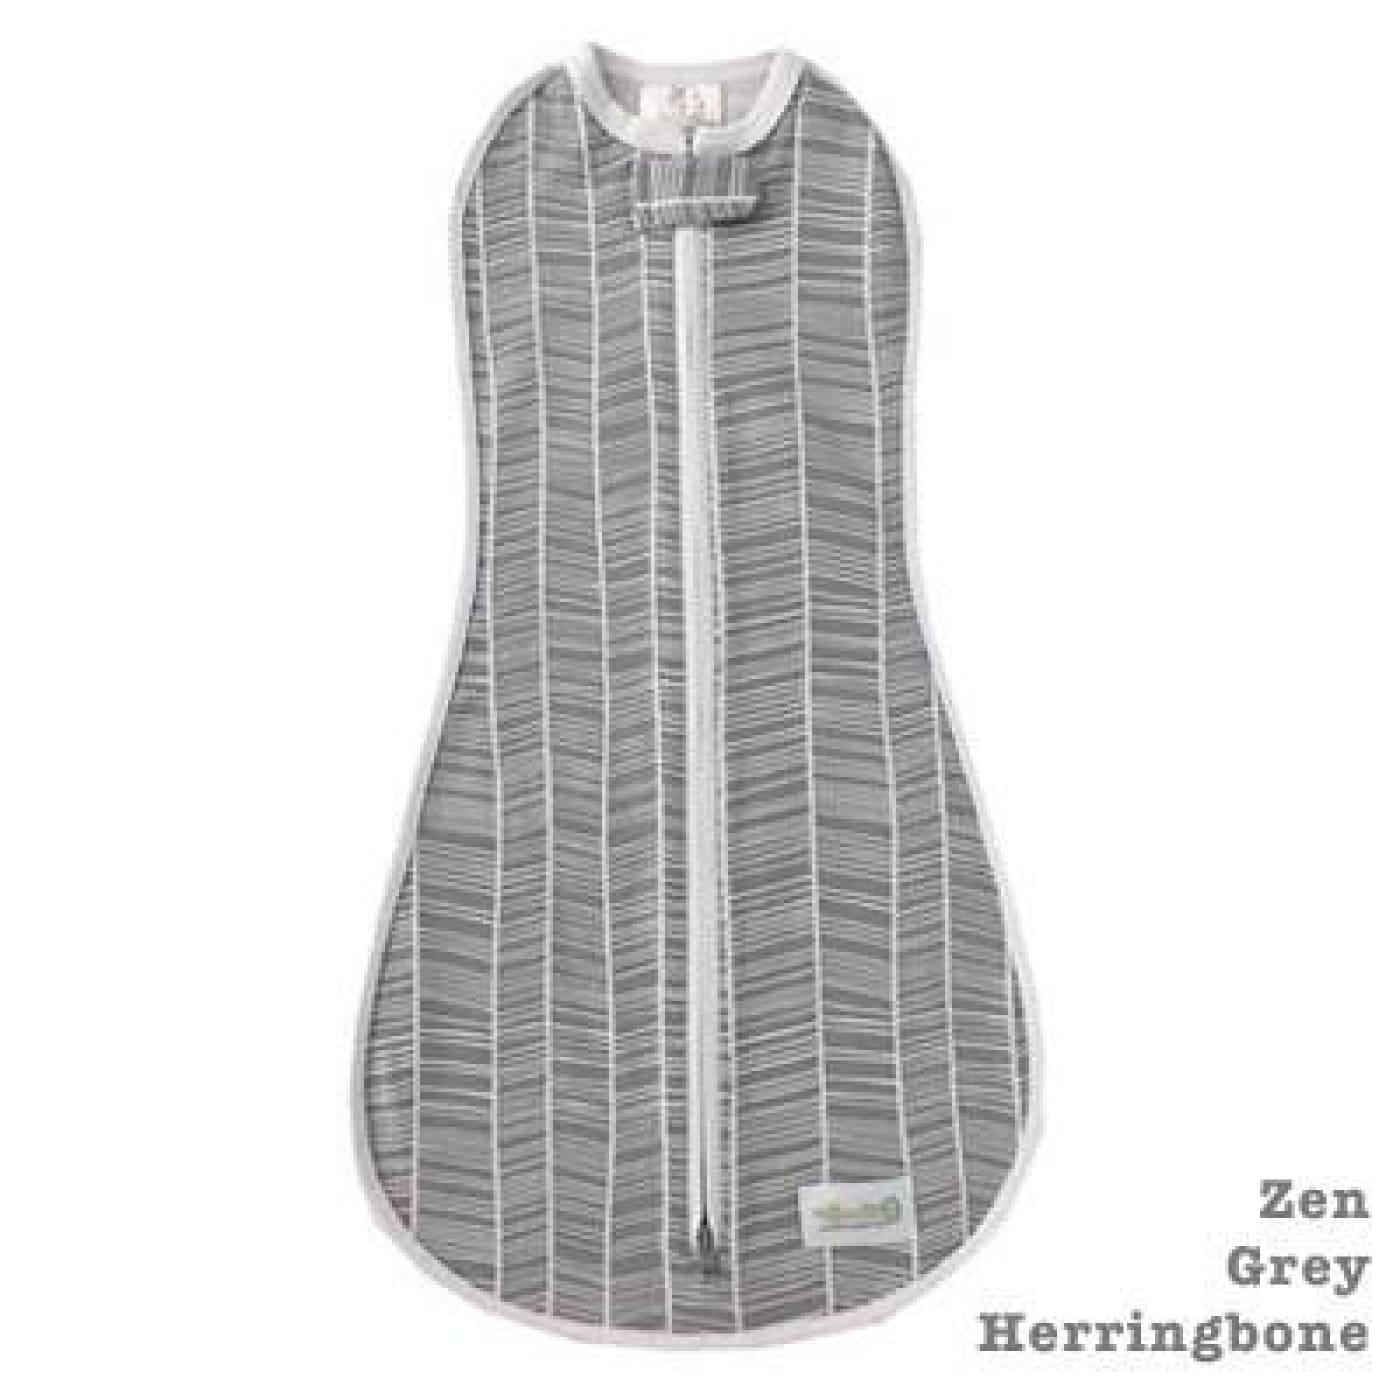 Woombie Original - Zen Grey Herringbone Big Baby 3-6M/6.5-9KG - NURSERY & BEDTIME - SWADDLES/WRAPS